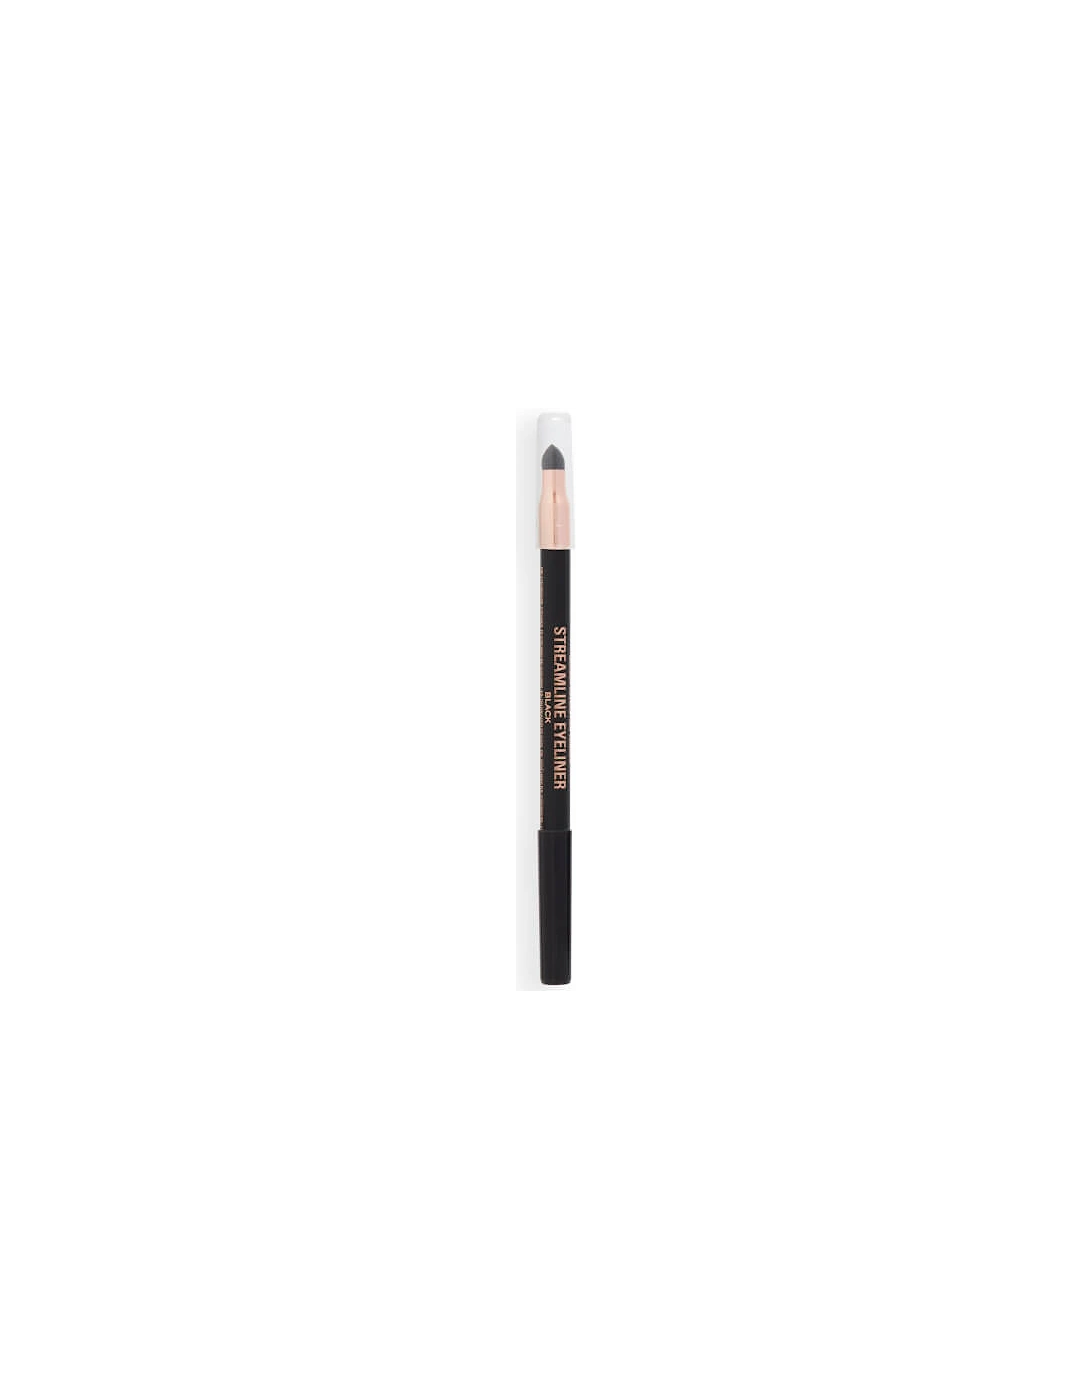 Makeup Streamline Waterline Eyeliner Pencil - Black, 2 of 1